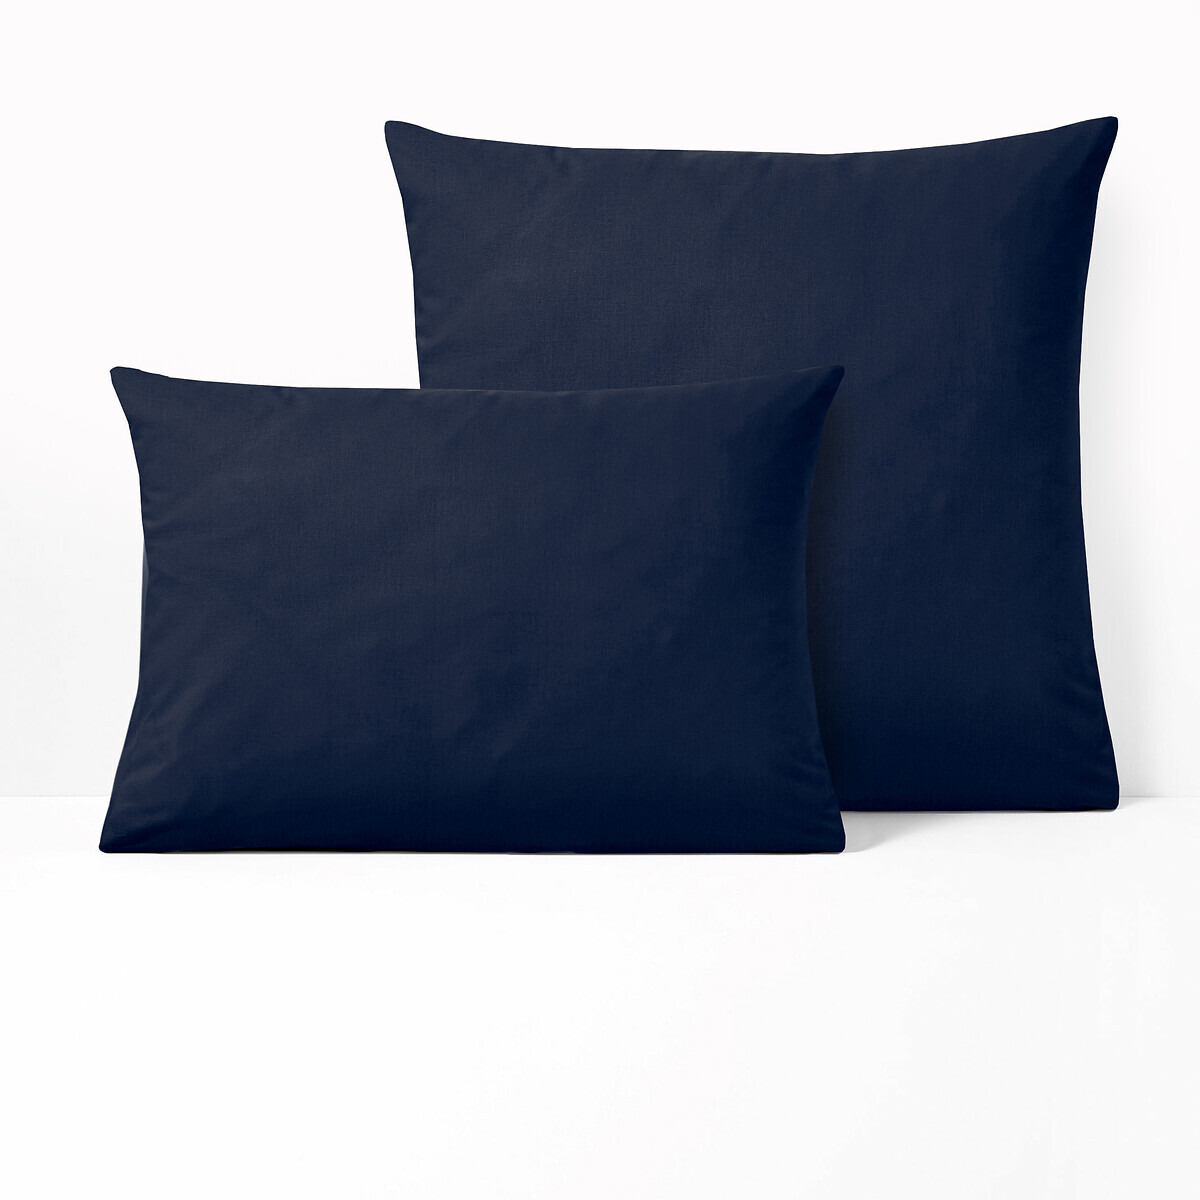 Scenario Plain Polycotton Pillowcase - image 1